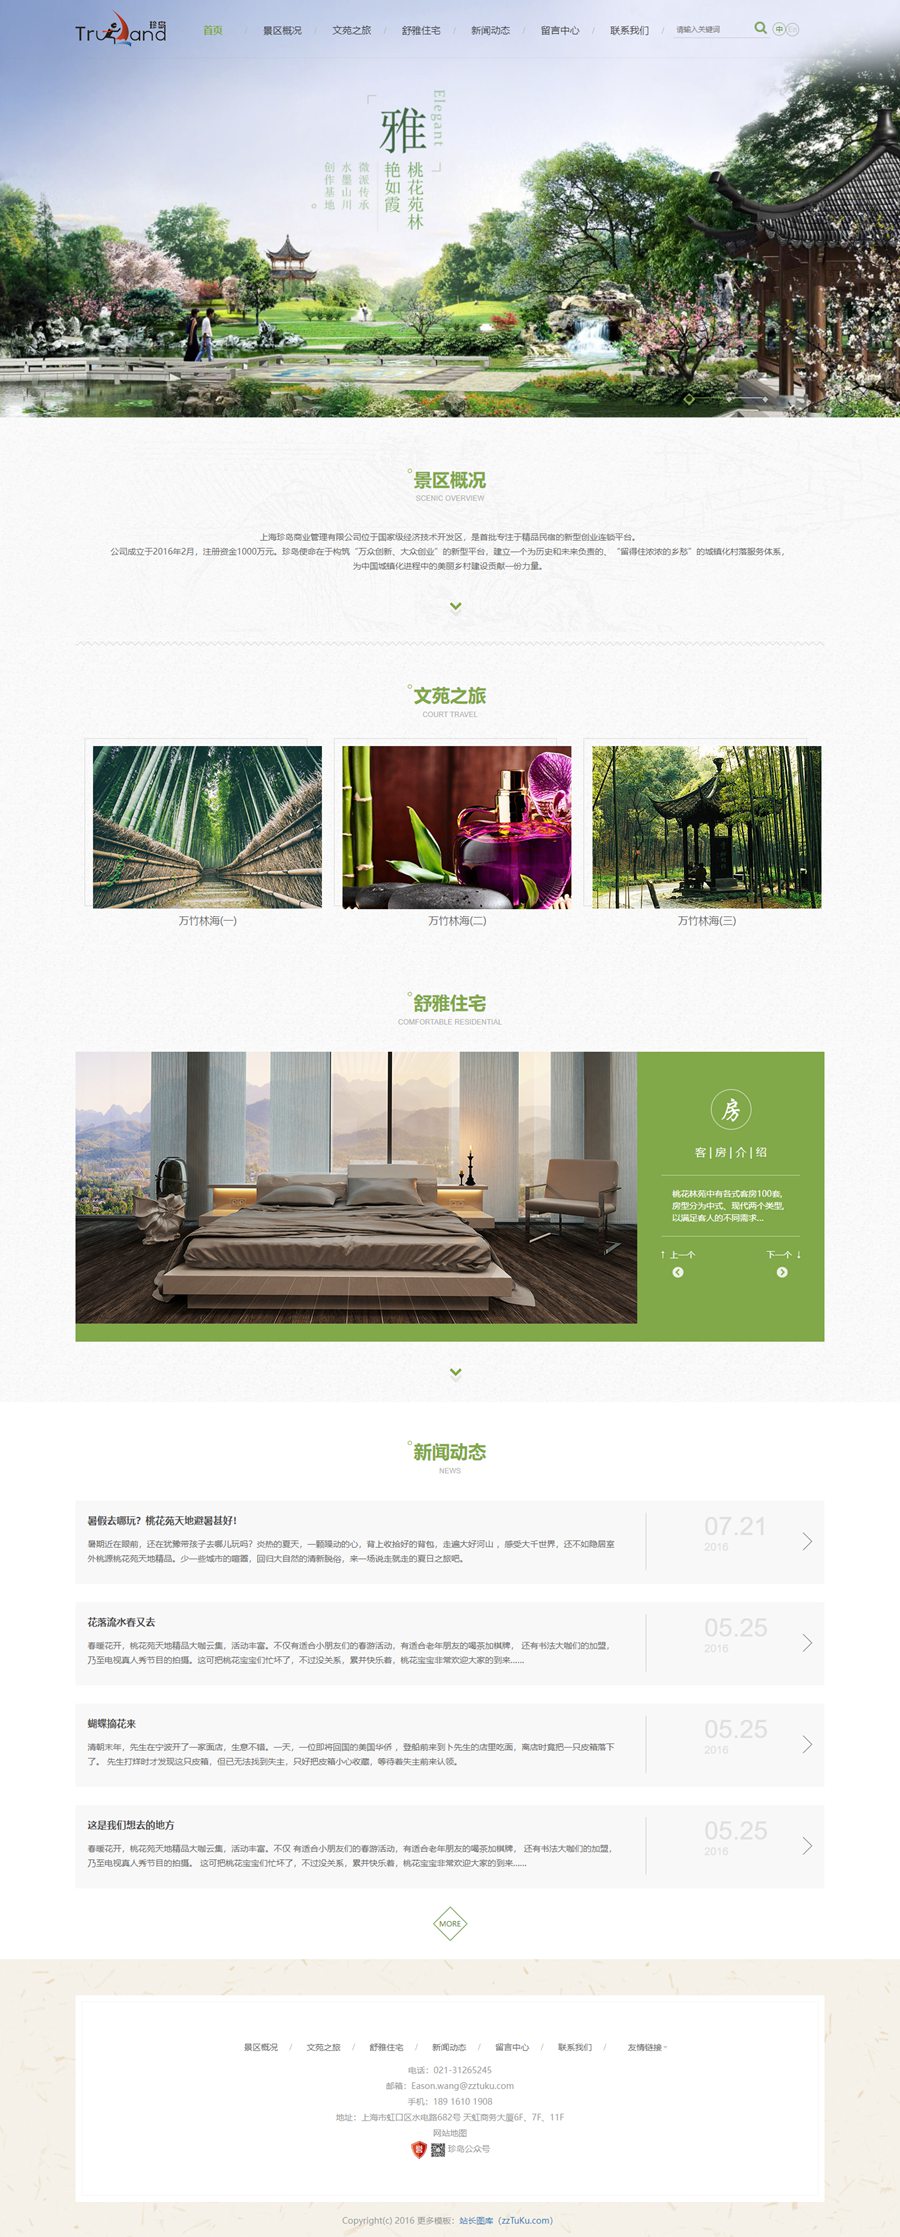 中国古典风格旅游主题网站响应式HTML静态模板